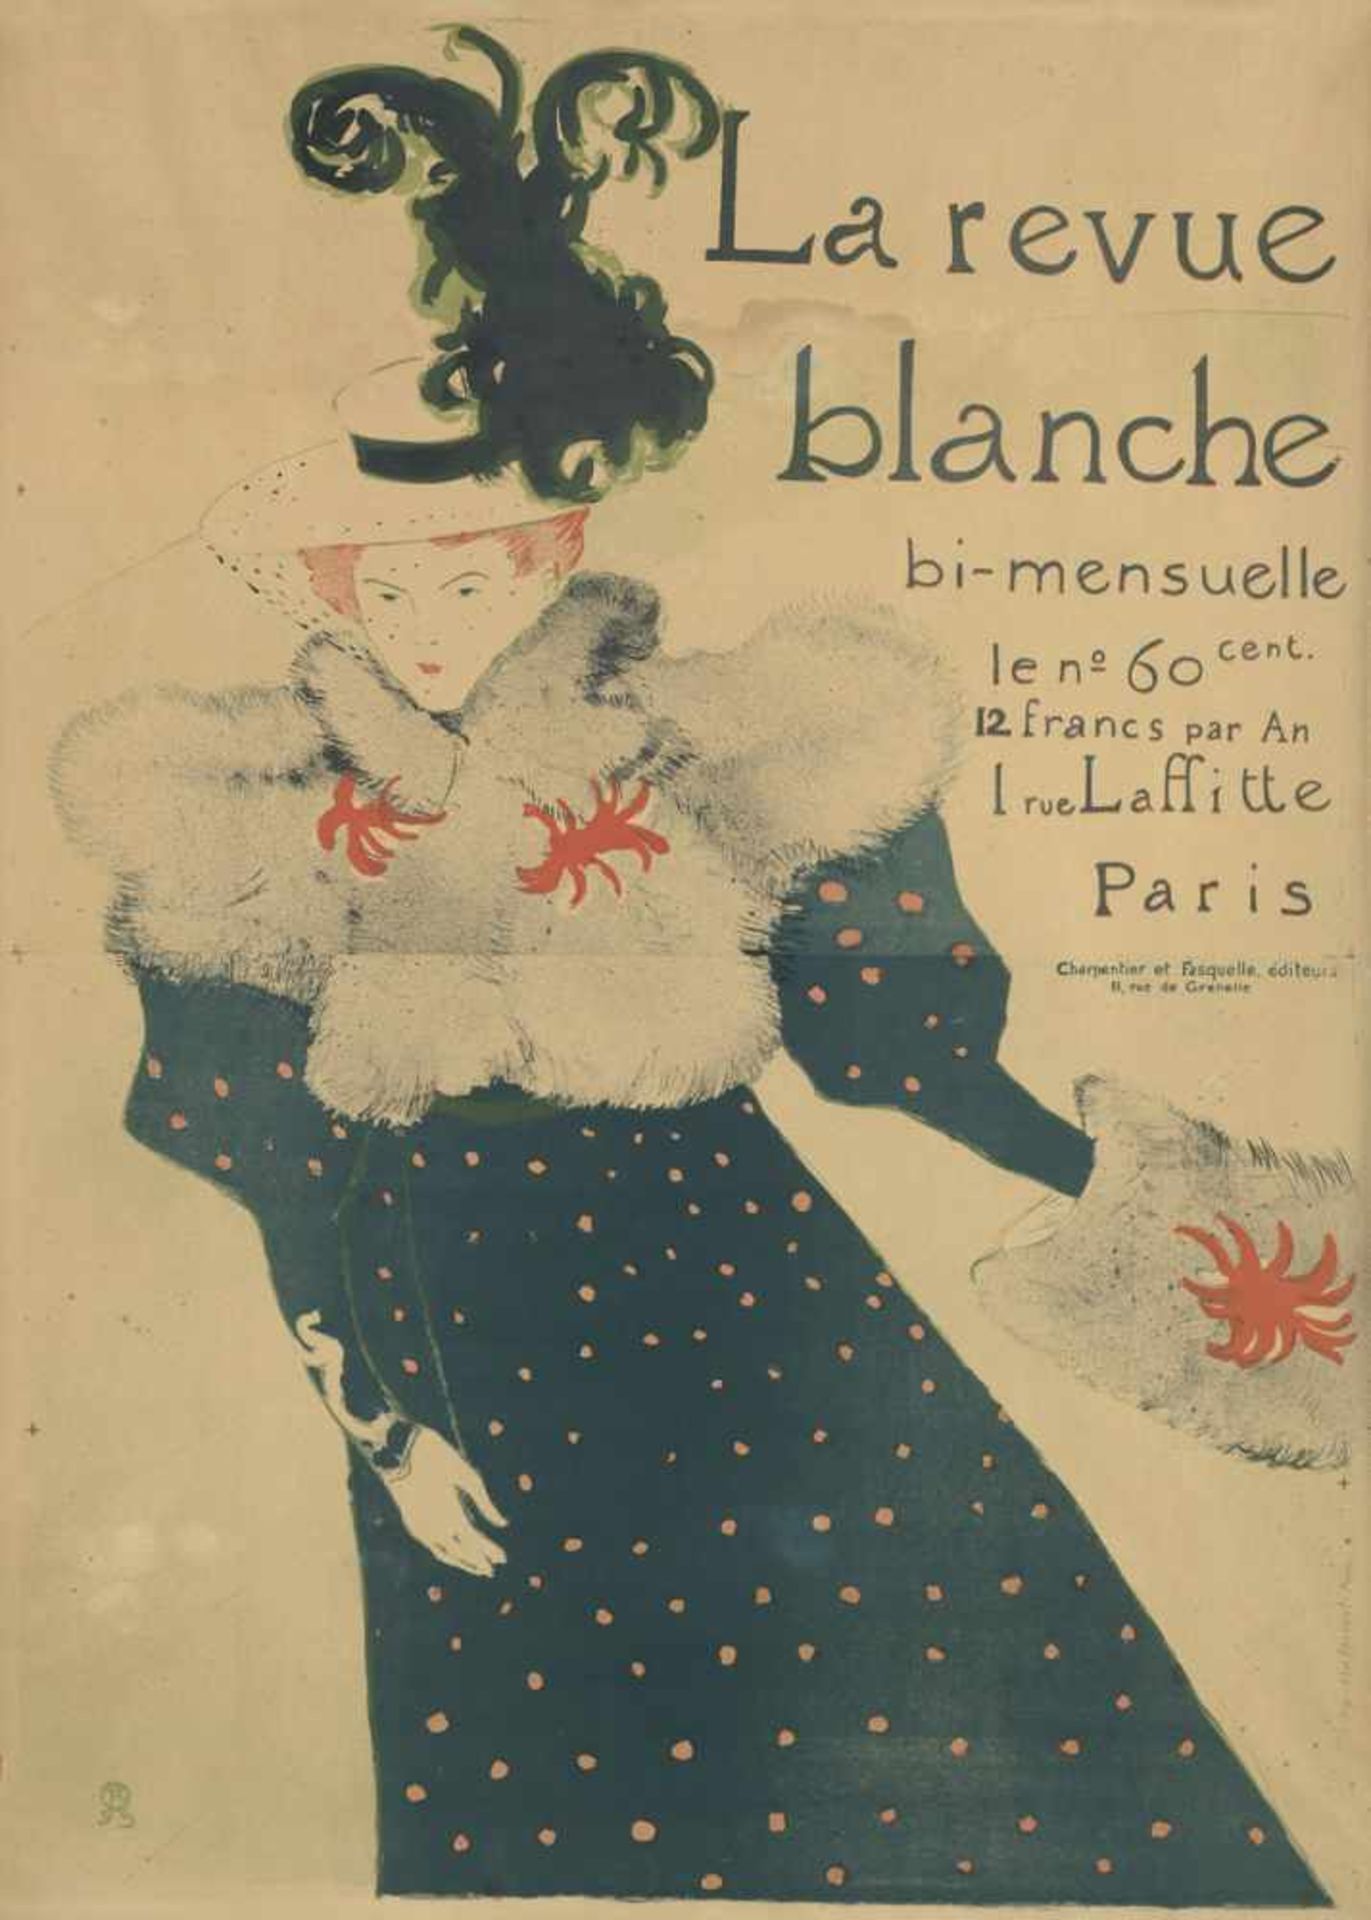 Toulouse-Lautrec, Henri de: La revue blanche